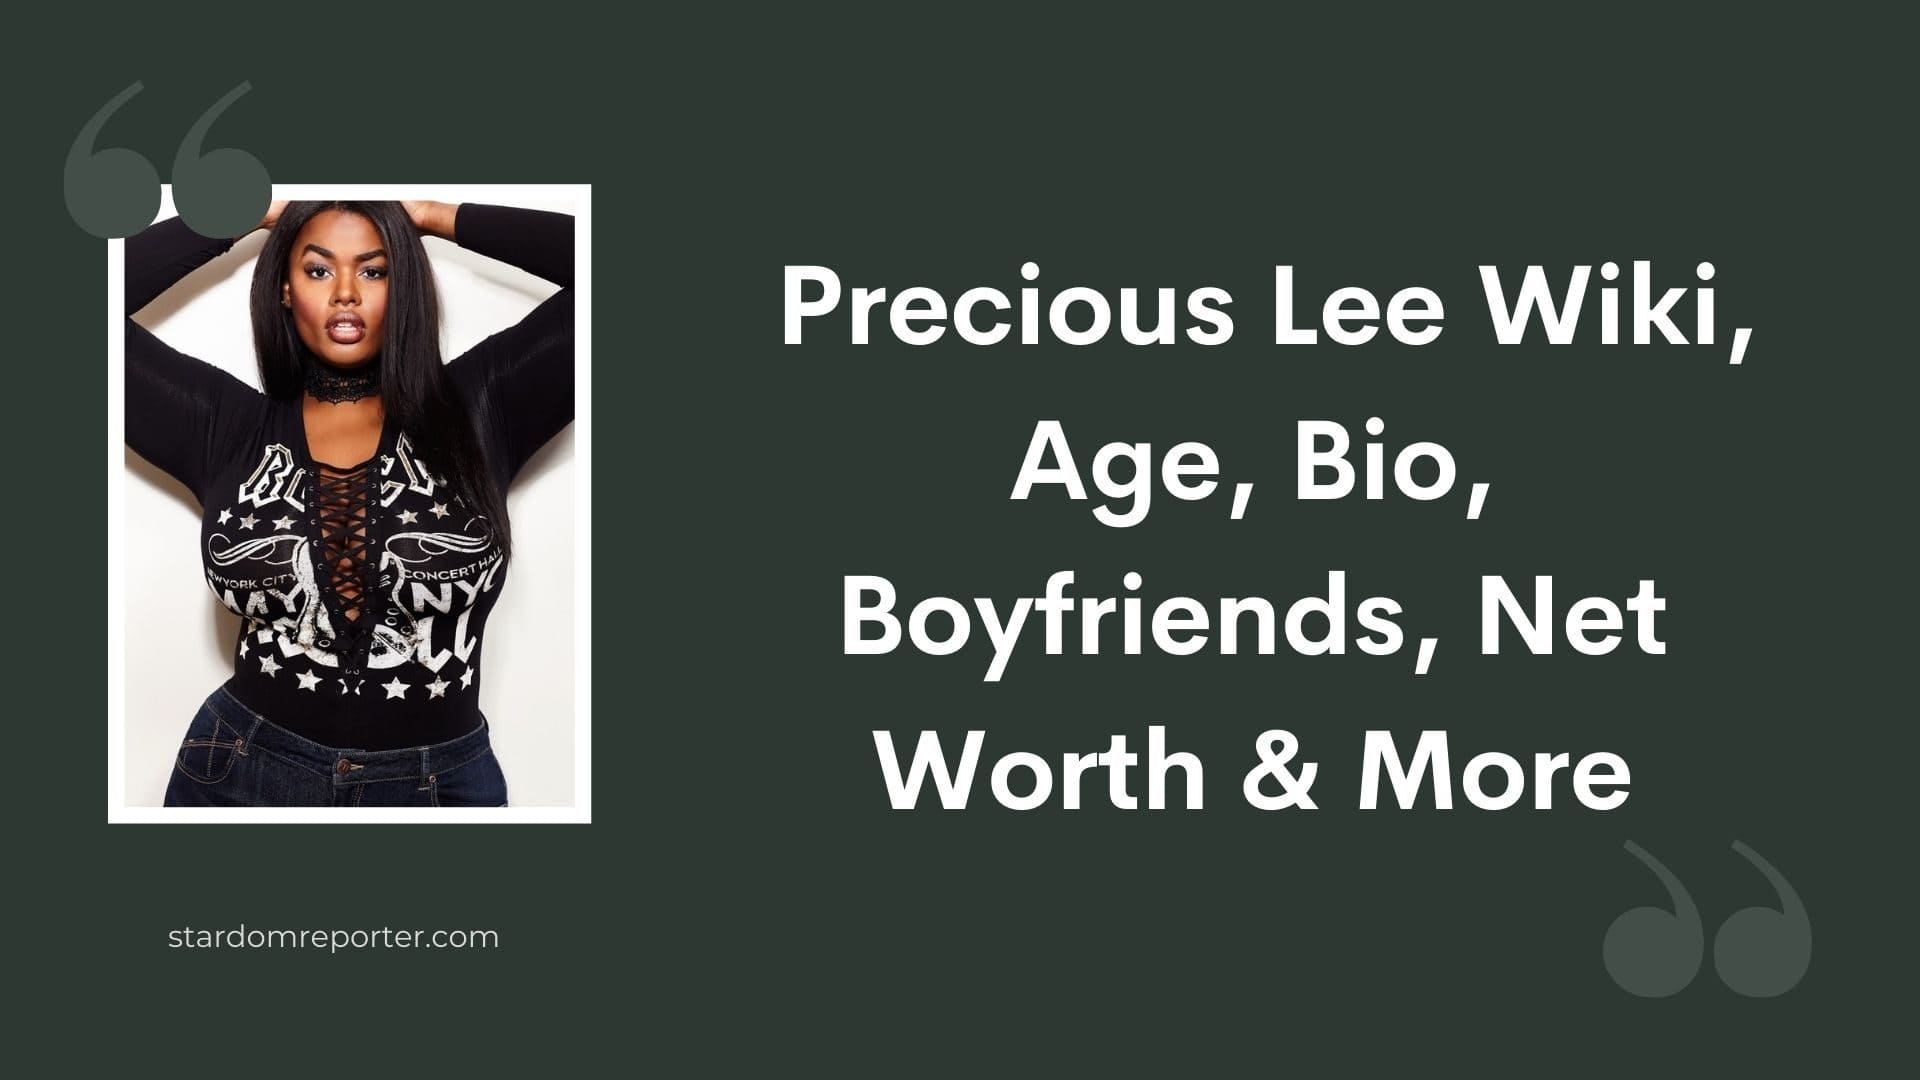 Precious Lee Wiki, Age, Bio, Boyfriends, Net Worth & More - 41